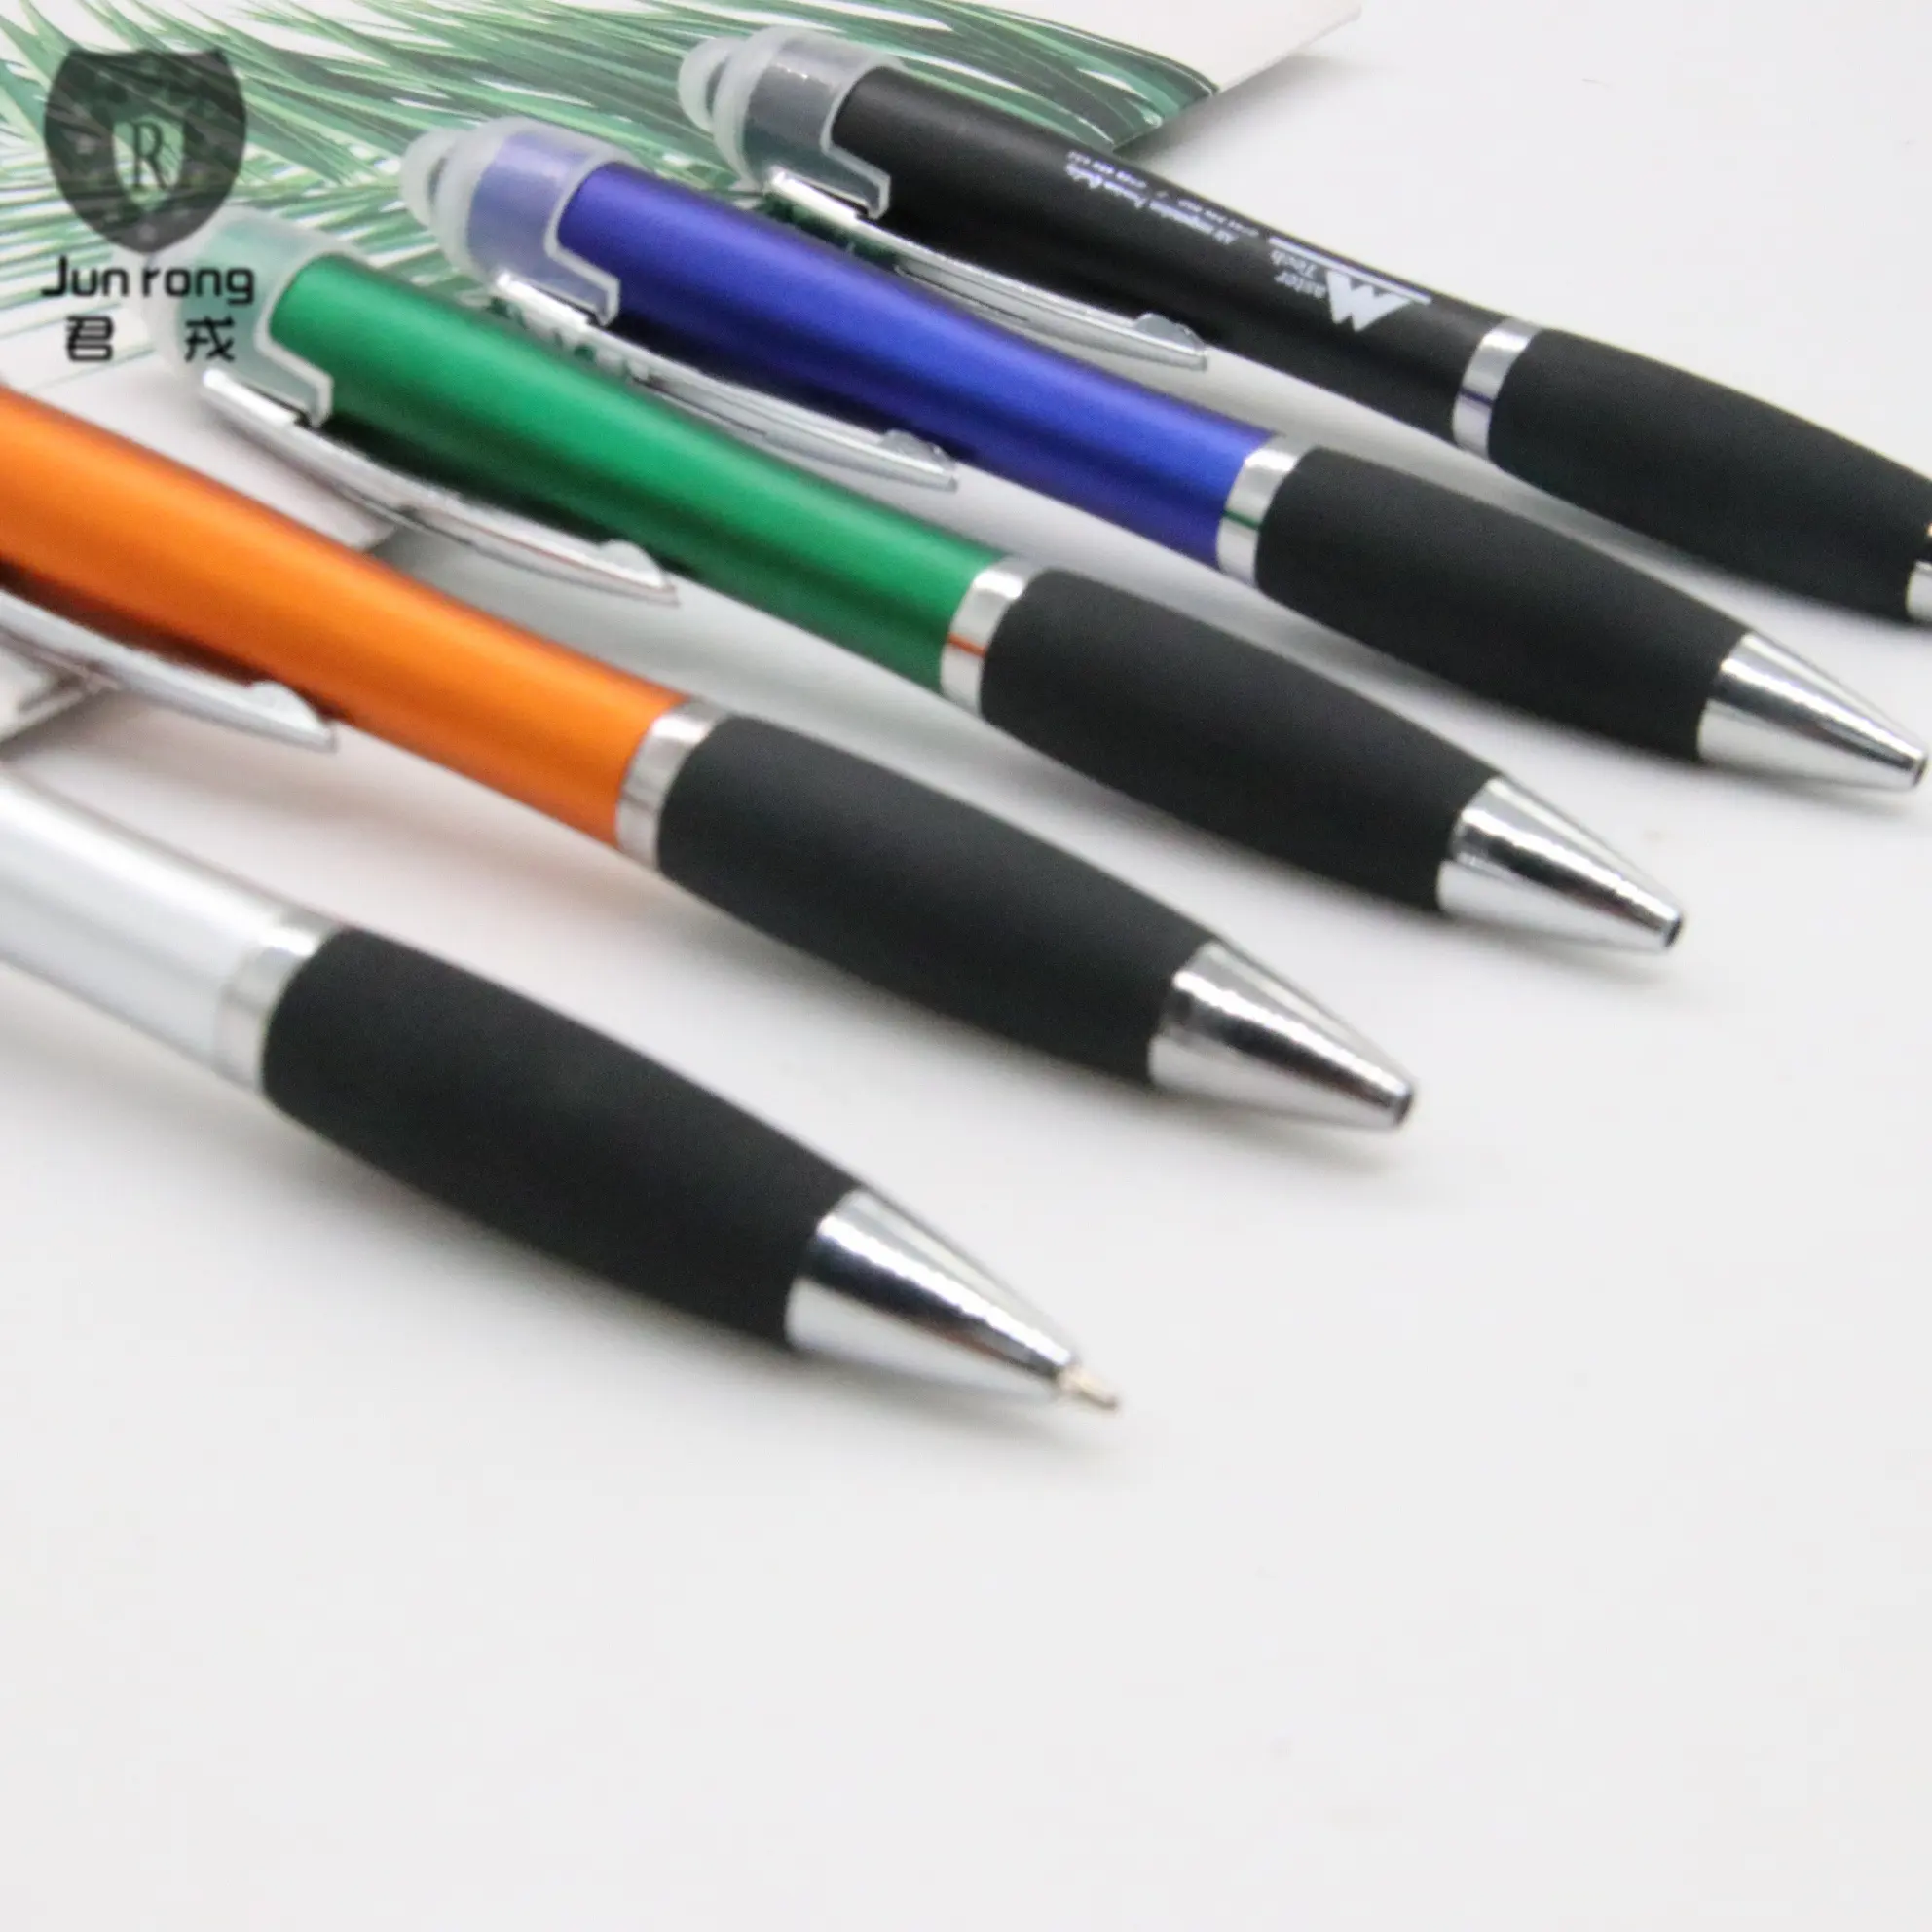 Led כדור עט קידום מכירות לוגו עטים כדורי stylus קידום מכירות led אור עט